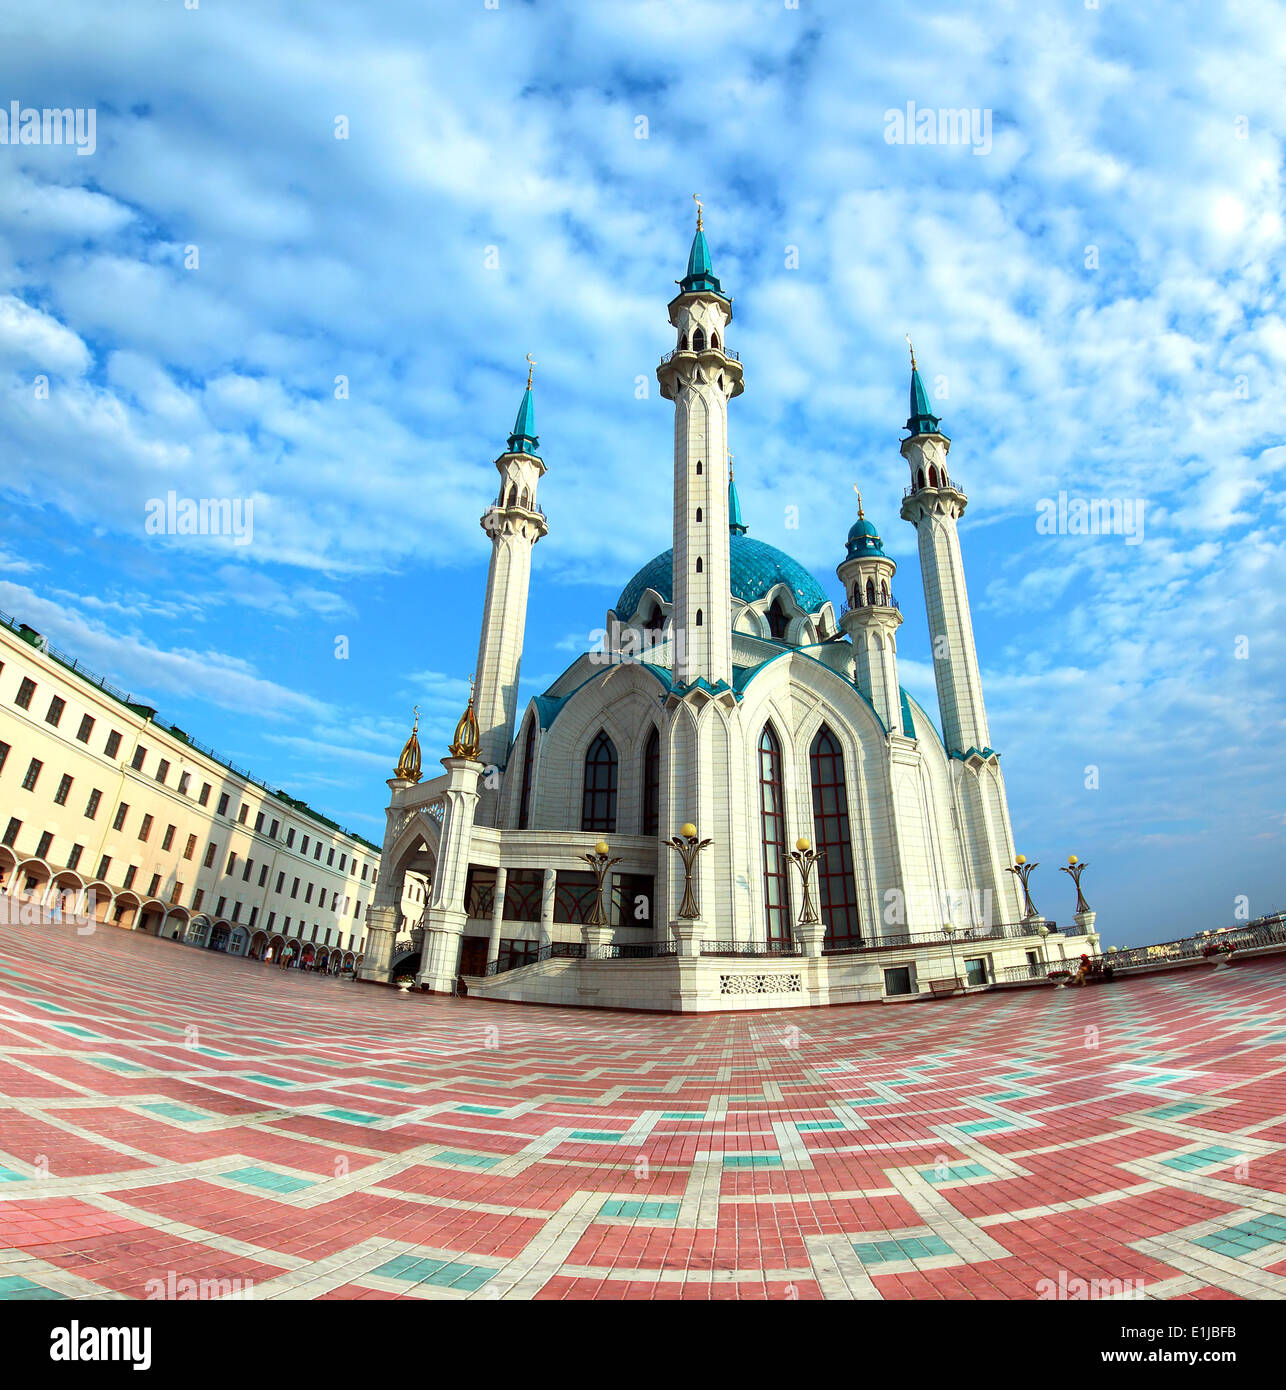 La mosquée kul sharif à Kazan en Russie Banque D'Images